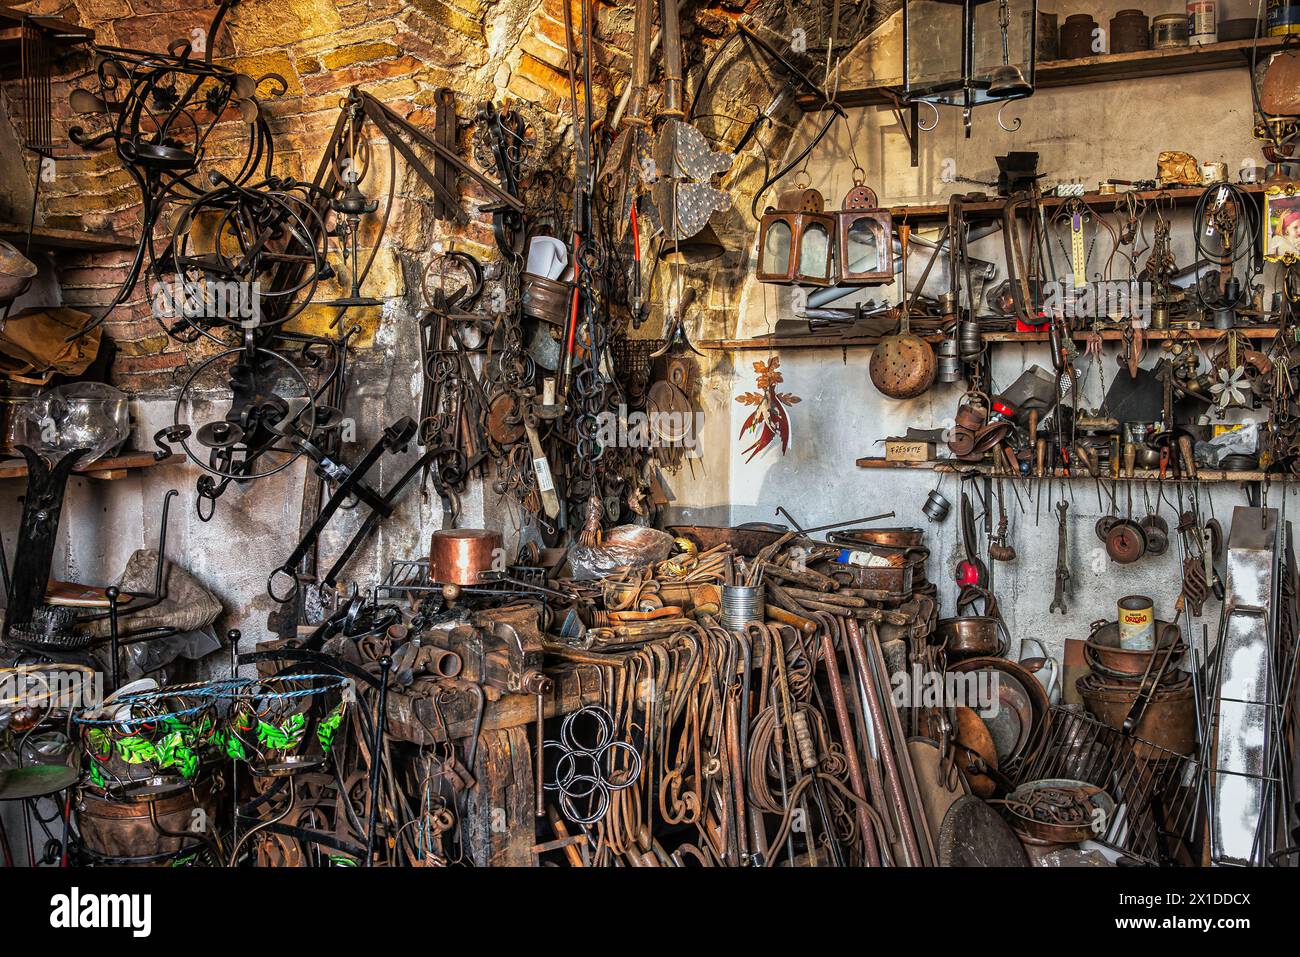 L'intérieur d'un atelier de maître forgeron avec des objets suspendus en fer forgé et cuivre. Guardiagrele, province de Chieti, Abruzzes, Italie, Europe Banque D'Images